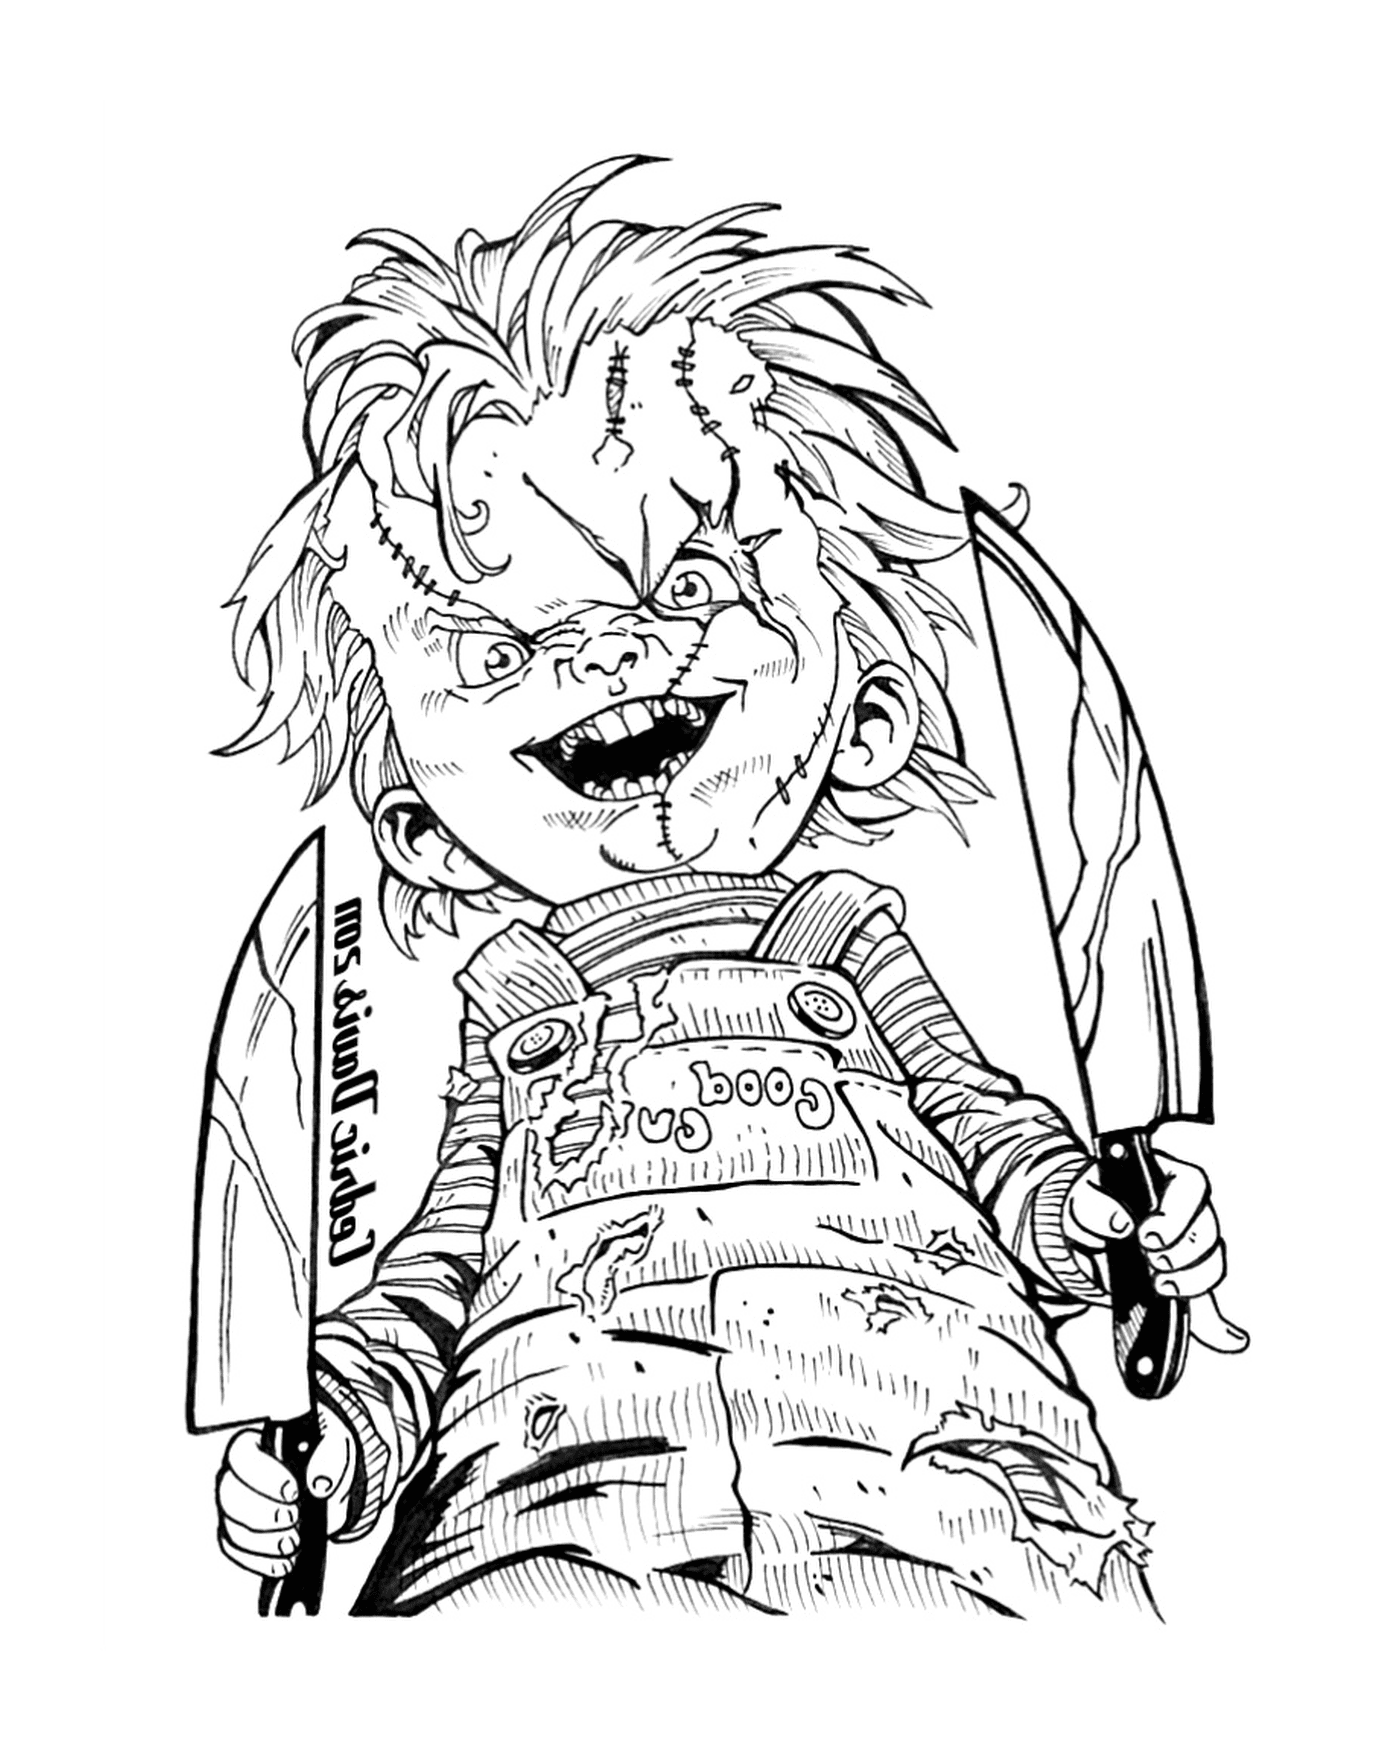  Muñeca de Chucky que da miedo 